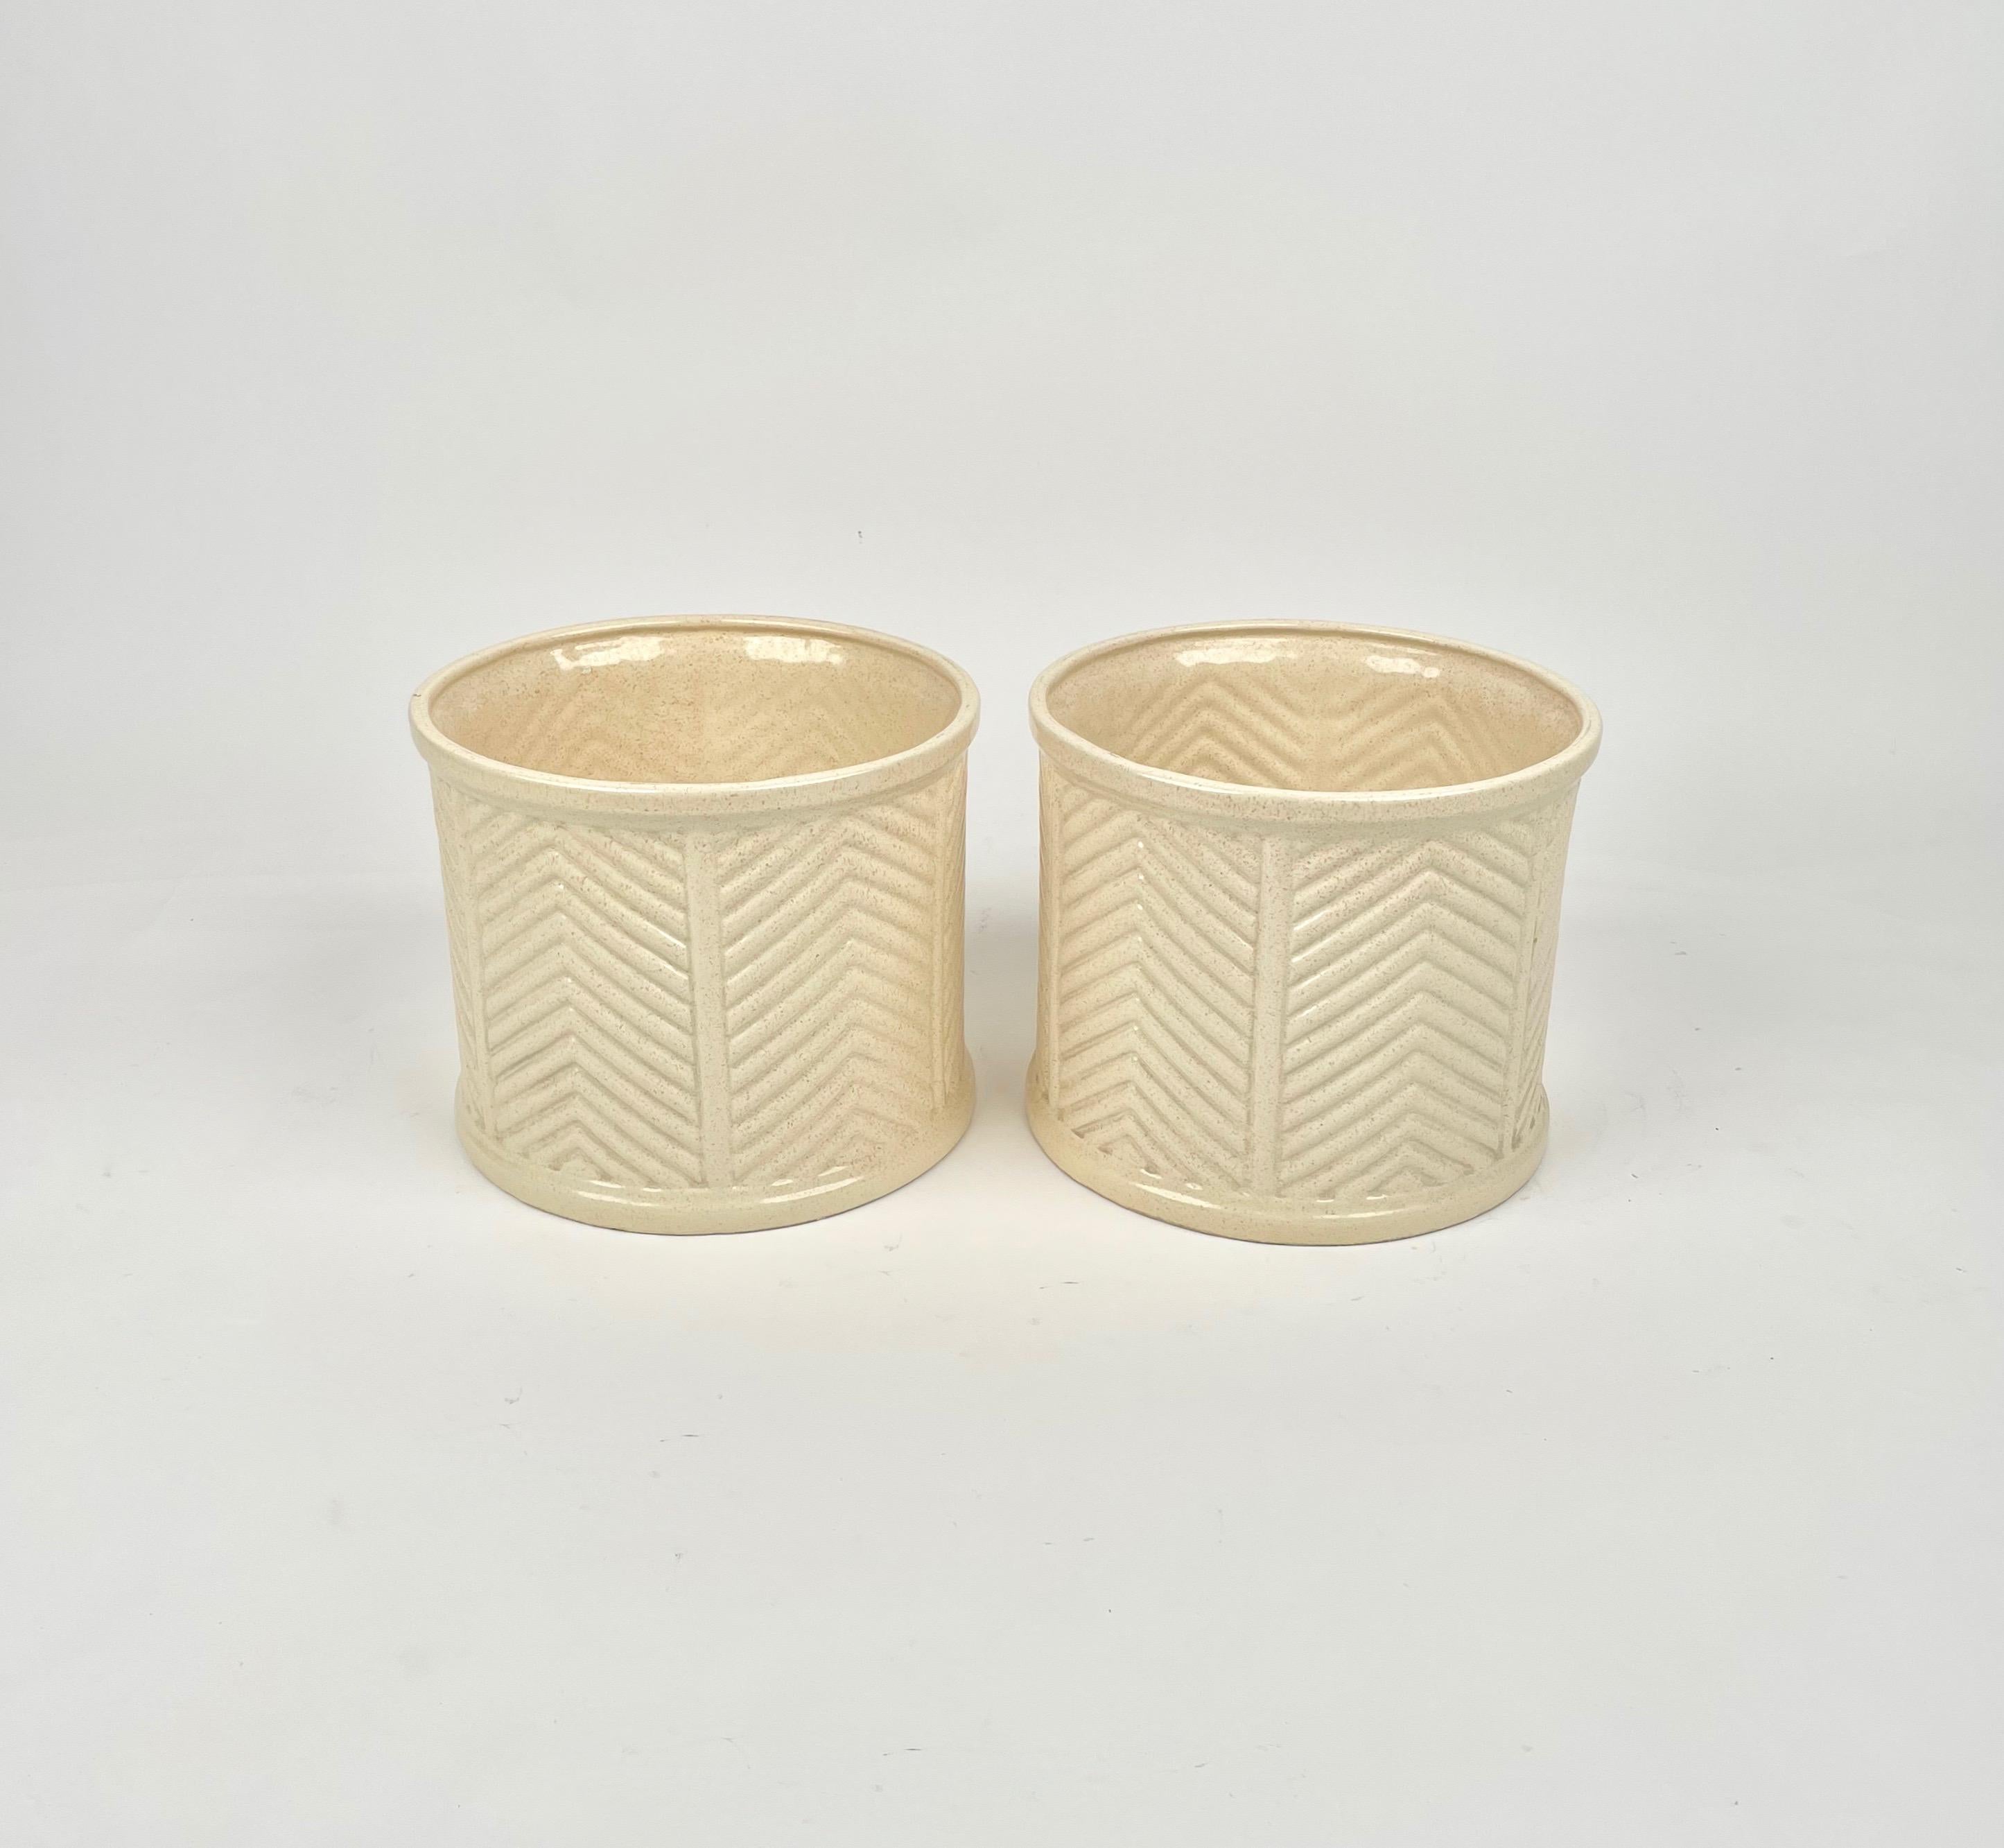 Paire de vases en céramique beige par B Ceramiche pour Tommaso Barbi. Fabriqué en Italie dans les années 1970. 

Ils portent tous deux le cachet original 